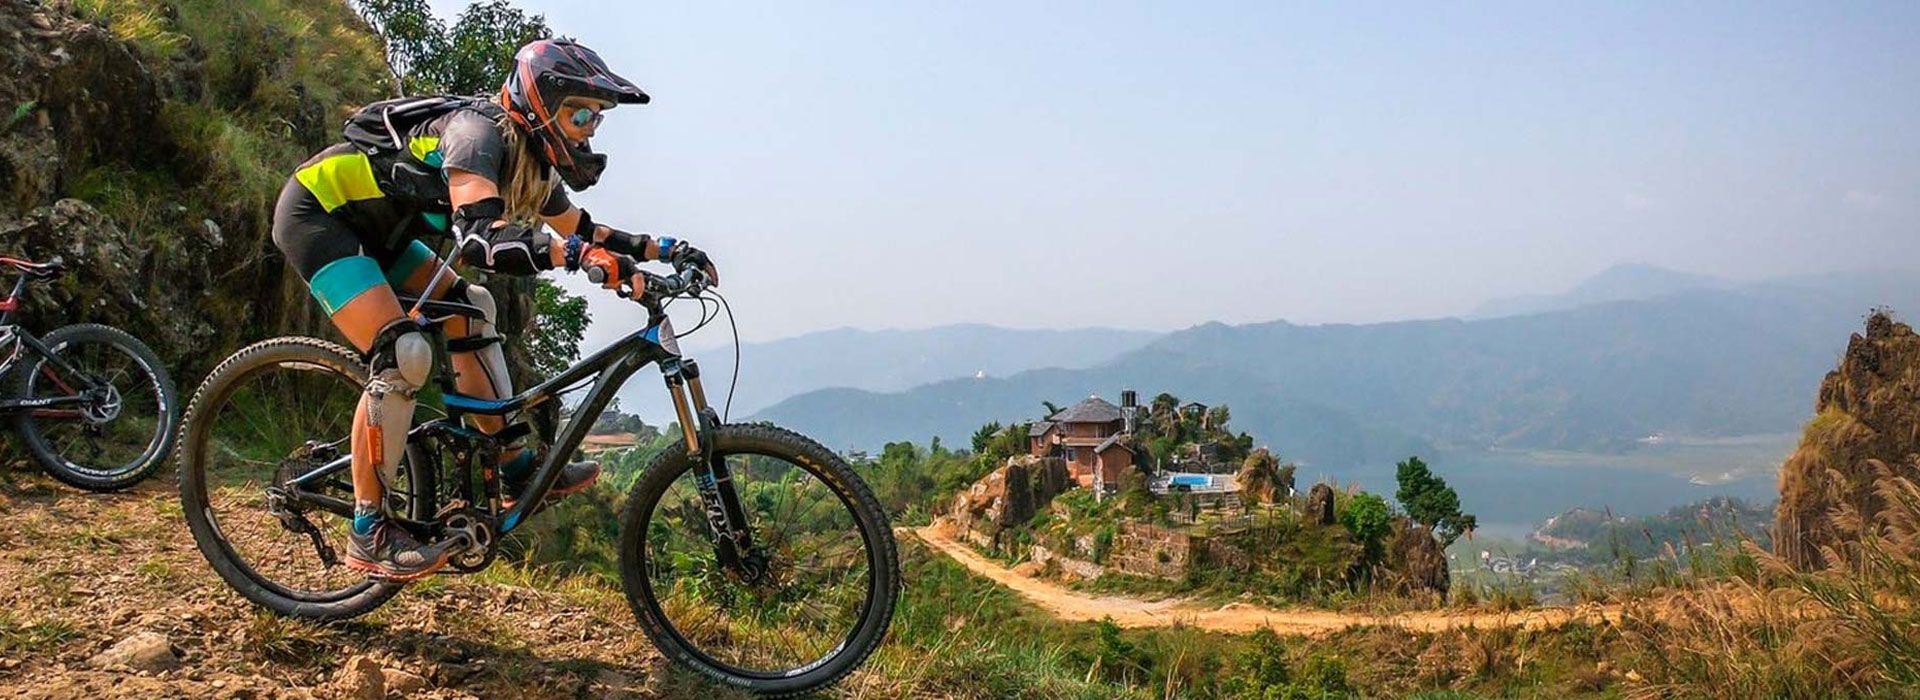 Mountain biking at Pokhara 